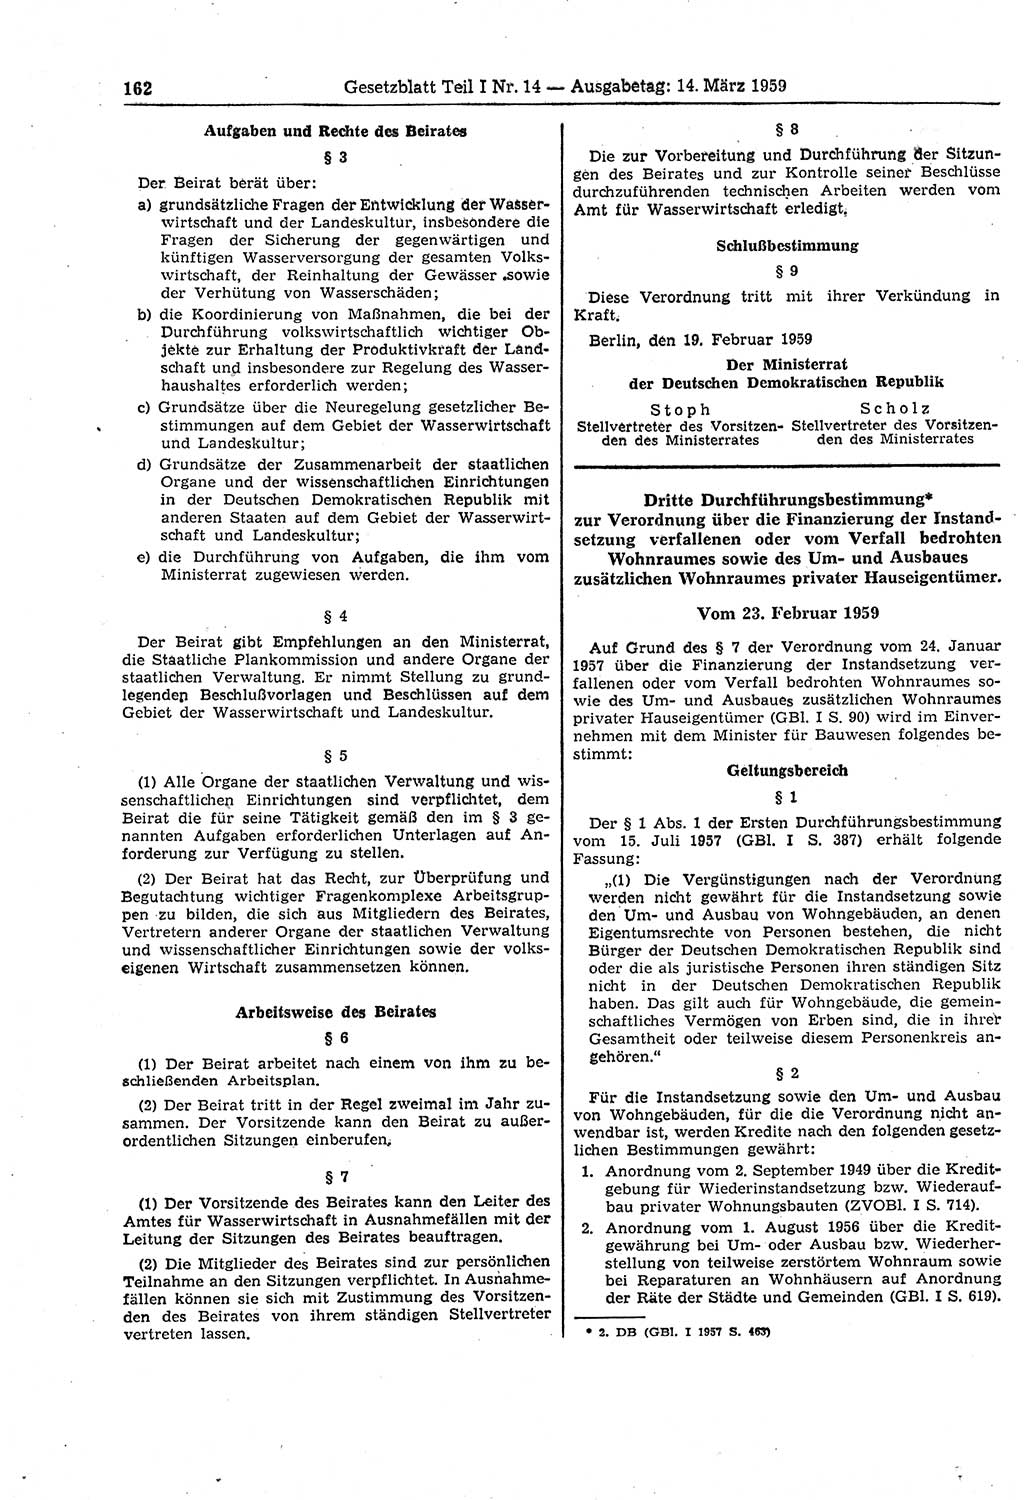 Gesetzblatt (GBl.) der Deutschen Demokratischen Republik (DDR) Teil Ⅰ 1959, Seite 162 (GBl. DDR Ⅰ 1959, S. 162)